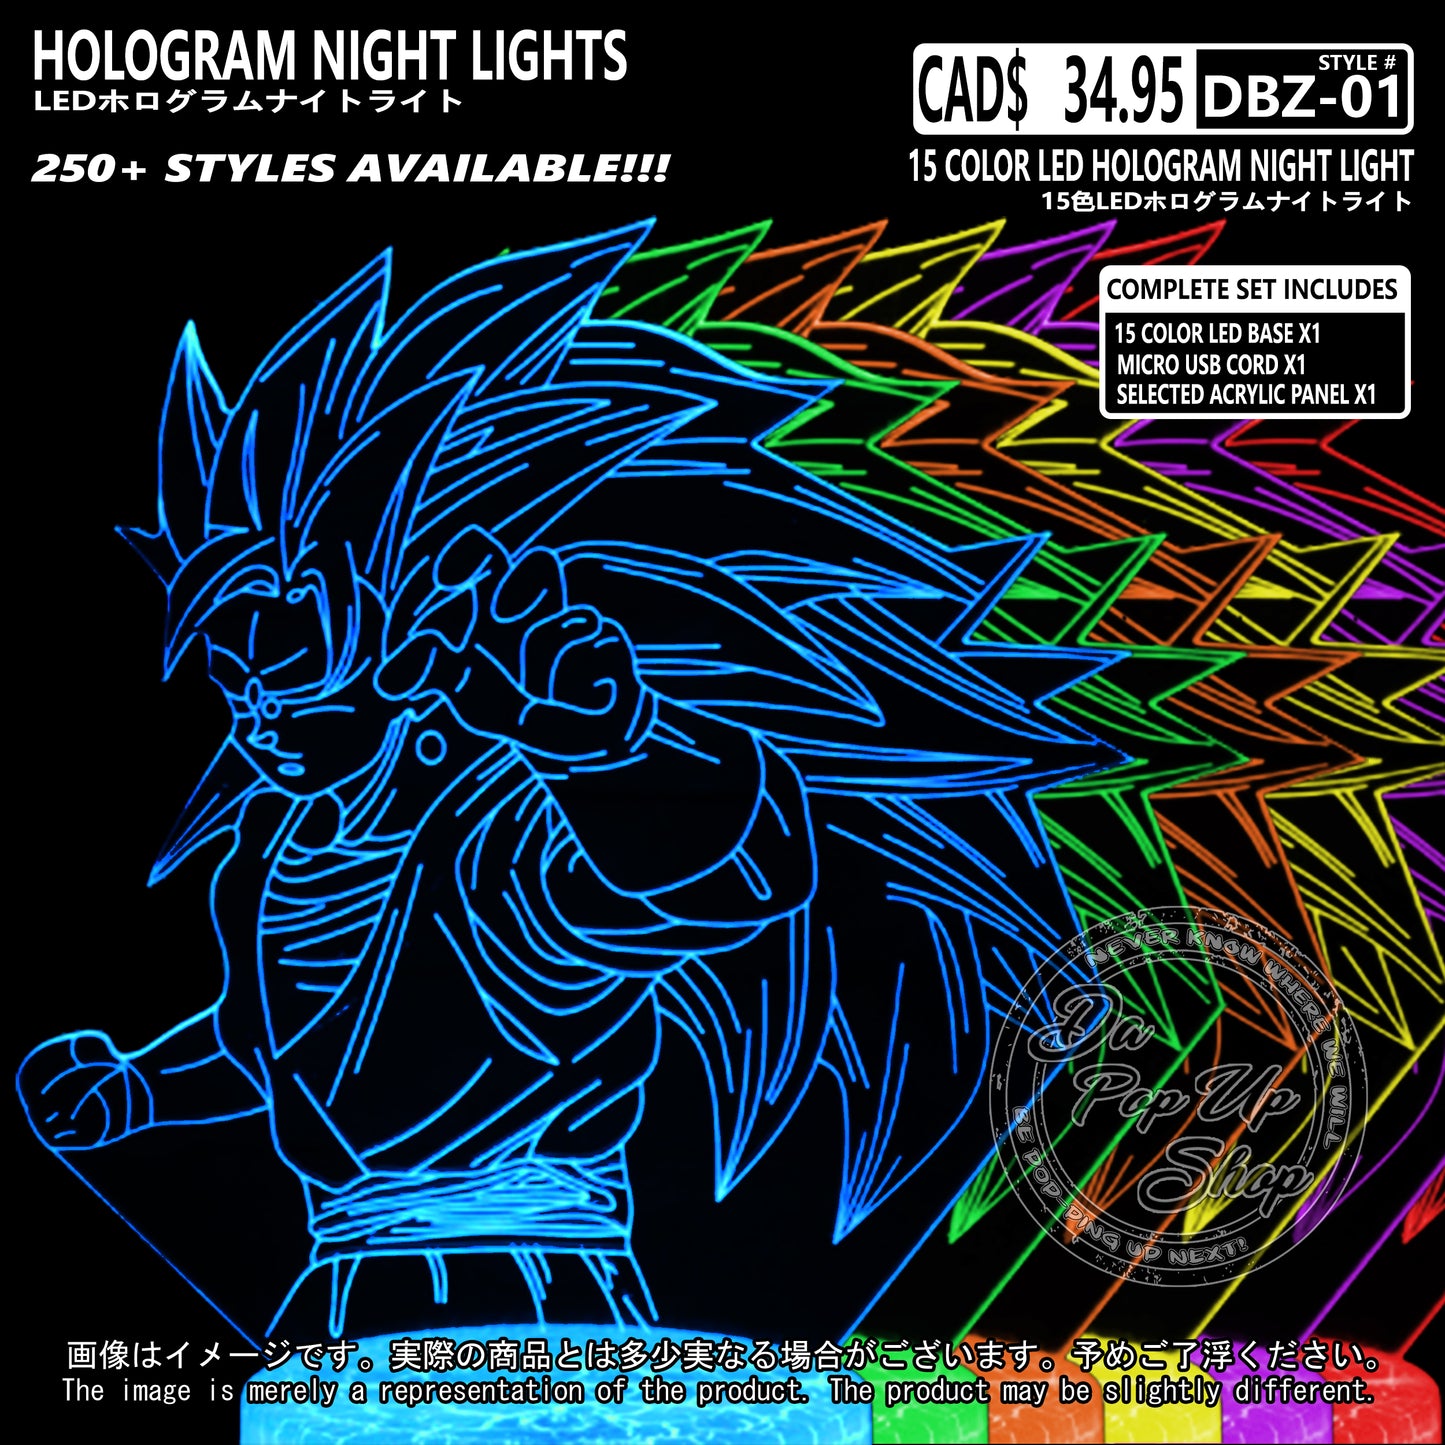 (DBZ-01) Dragon Ball Z Hologram LED Night Light